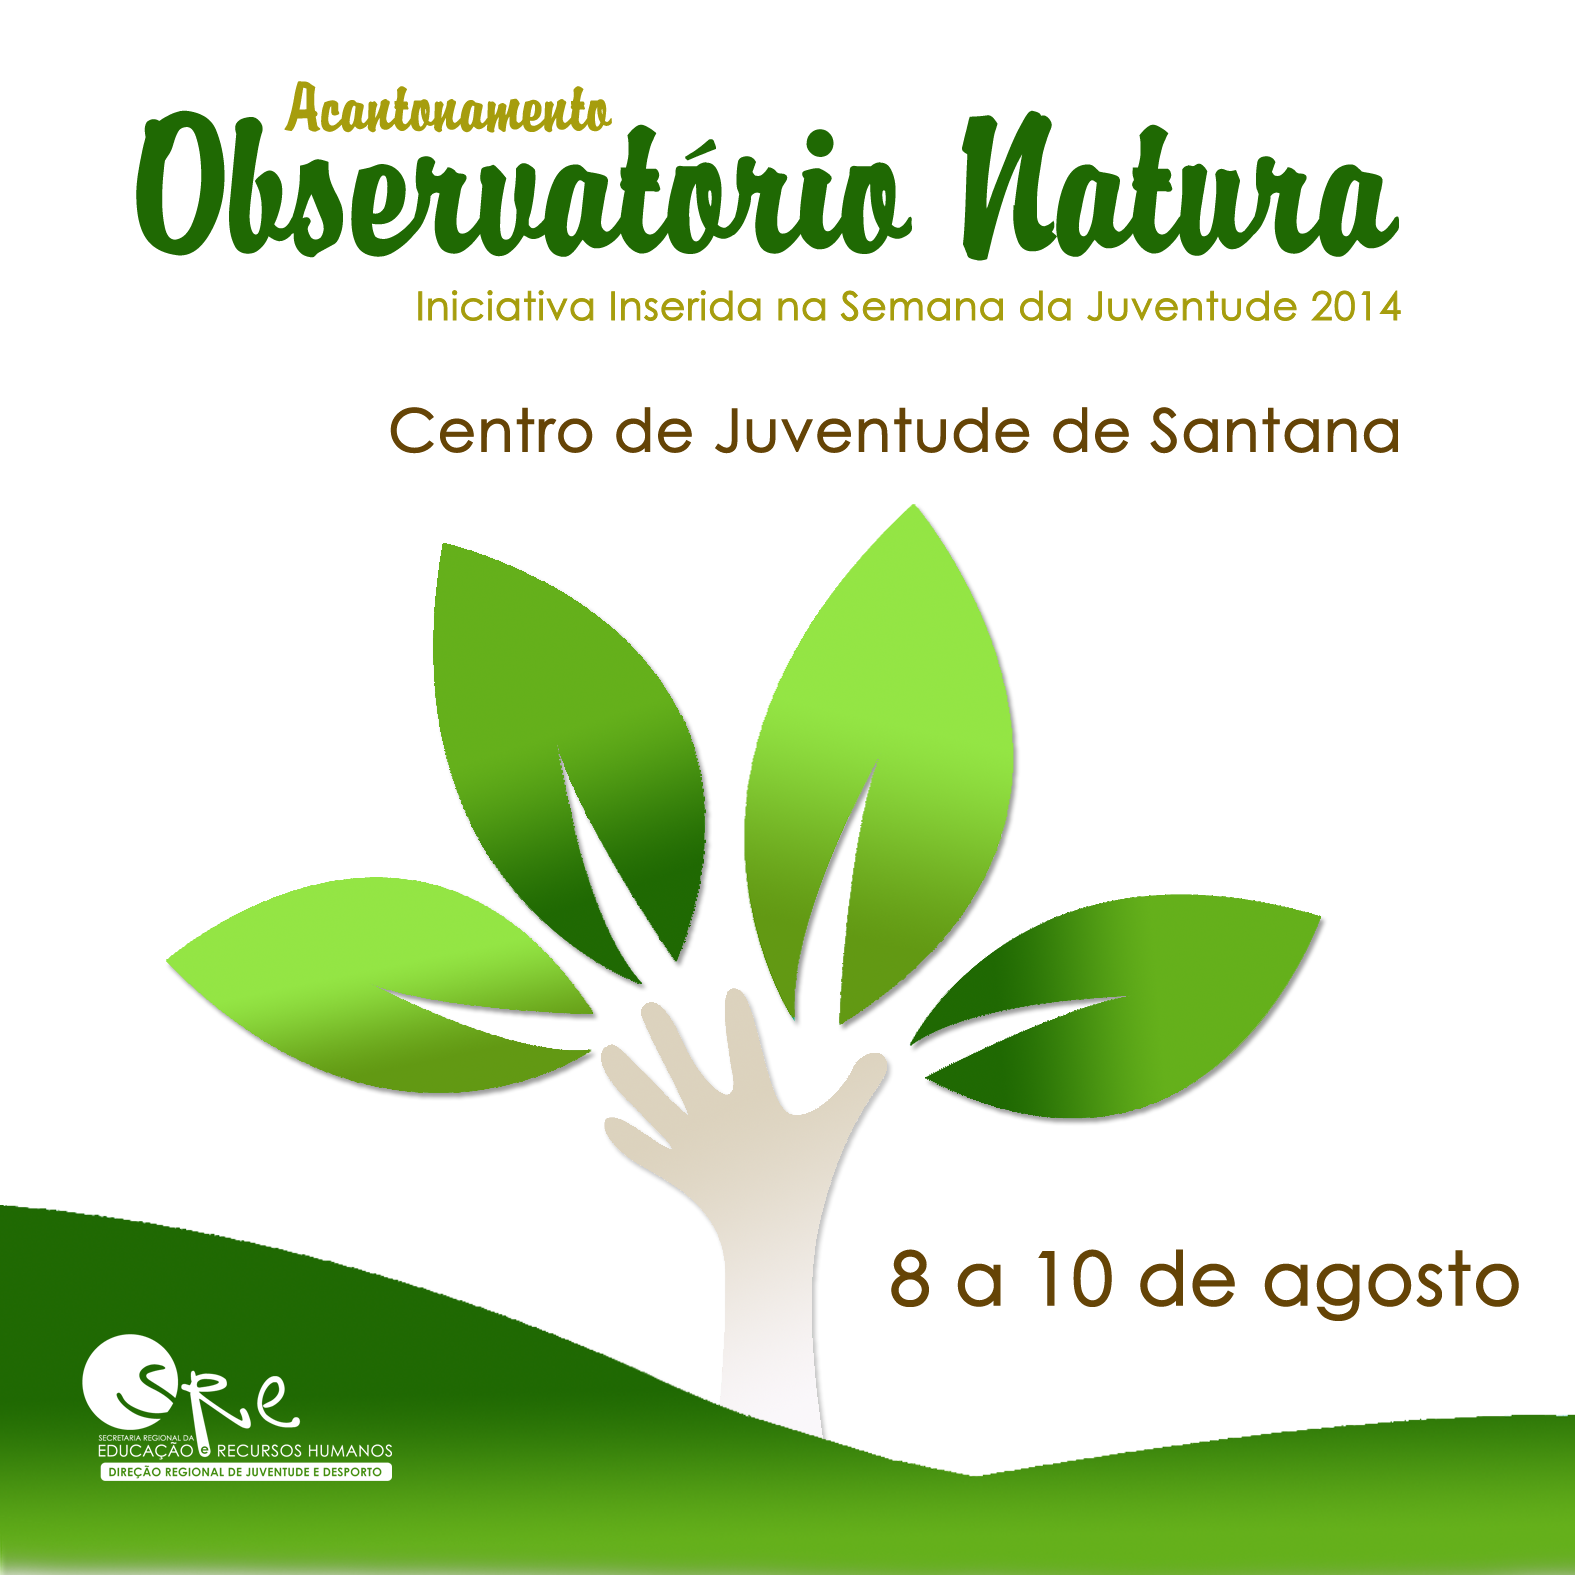 Observatório Natura: Inscrições abertas!